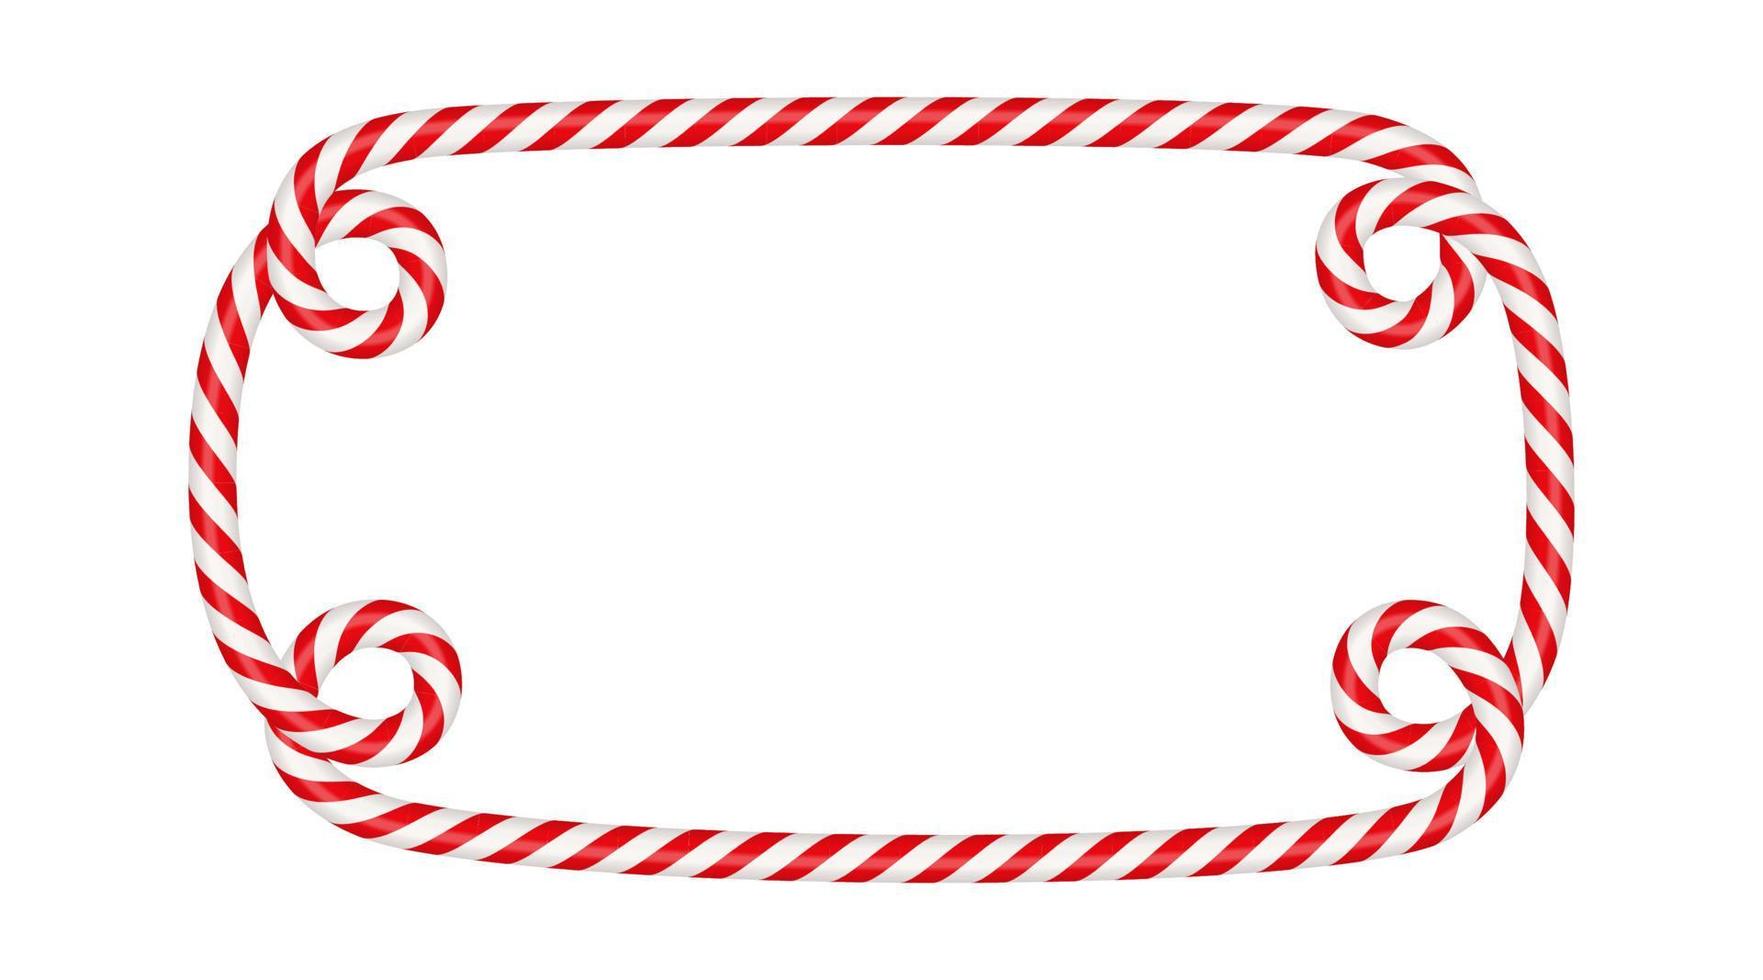 marco rectangular de bastón de caramelo de navidad con rayas rojas y blancas. borde de navidad con patrón de piruleta de caramelo a rayas. Ilustración de vector de plantilla de Navidad y año nuevo en blanco aislado sobre fondo blanco